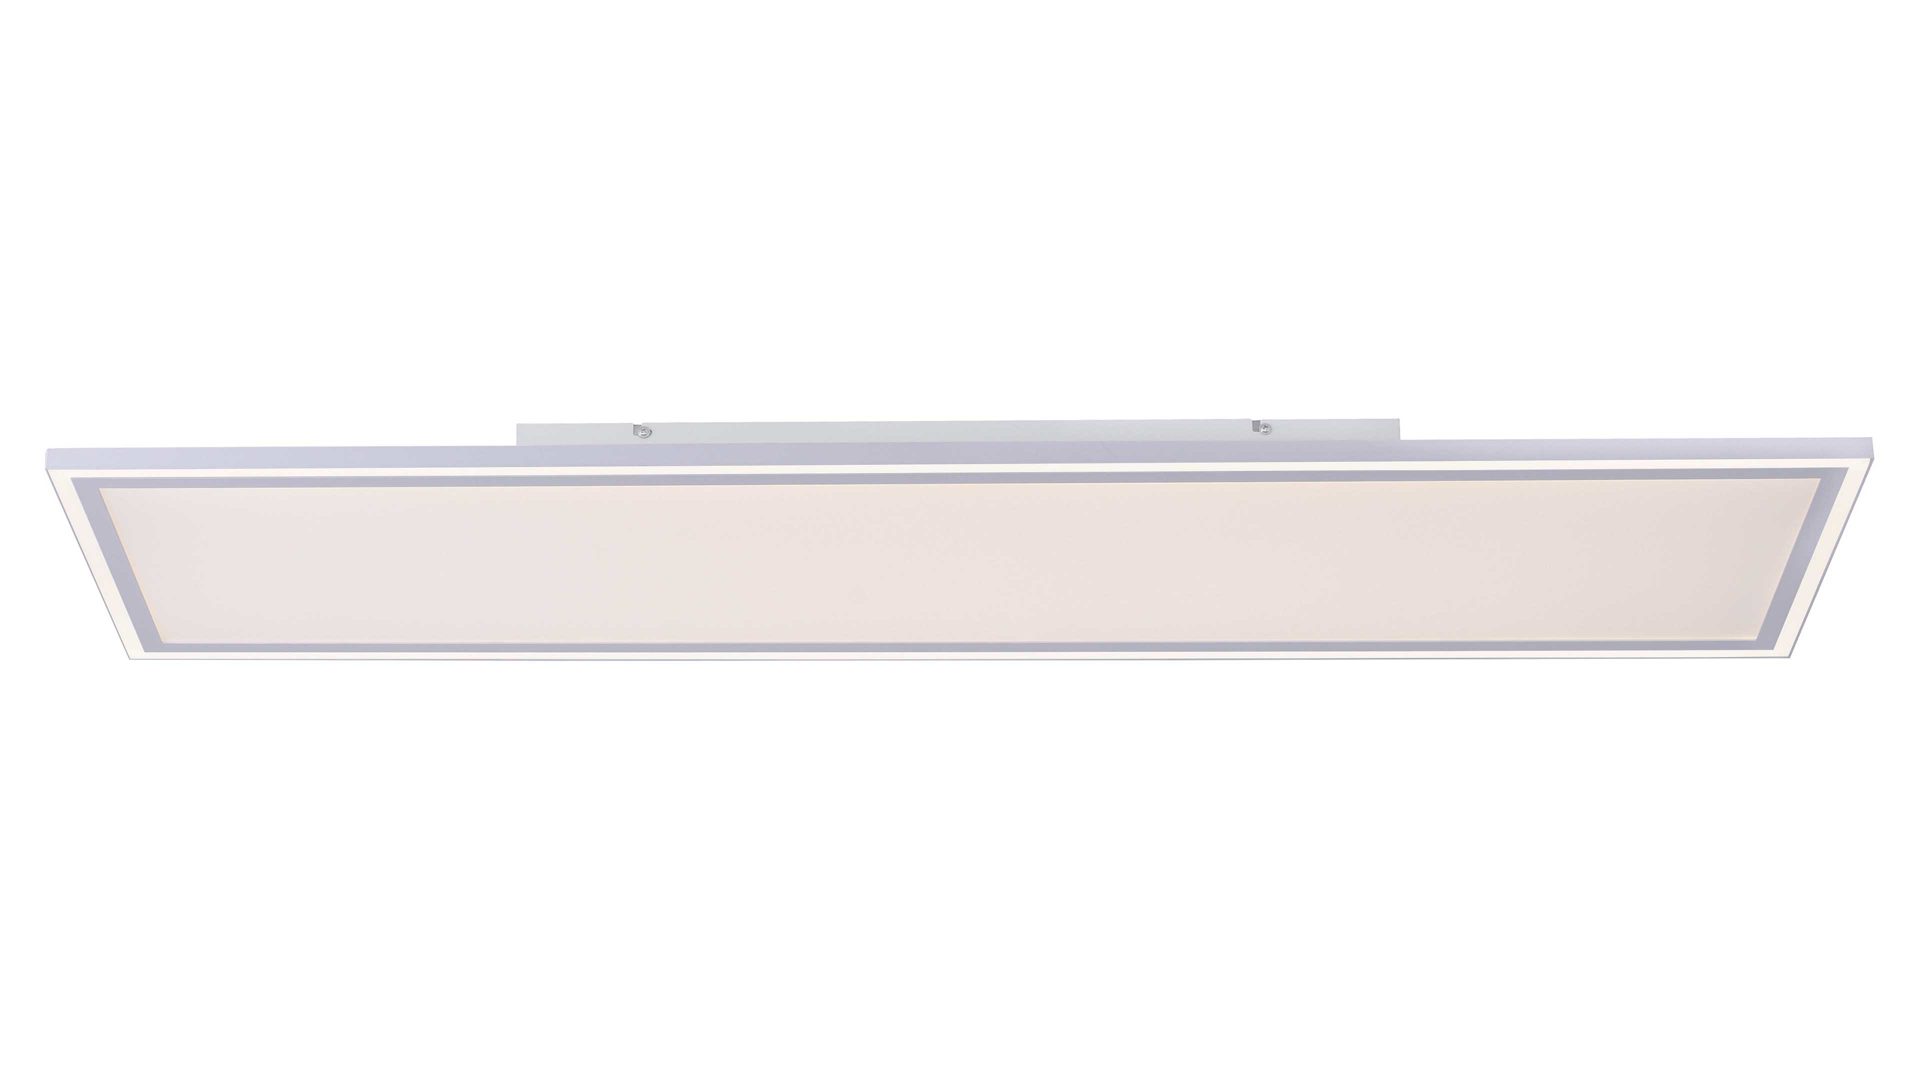 Deckenleuchte Just light. (leuchtendirekt) aus Metall in Weiß JUST LIGHT. Lampenserie Edging - Deckenlampe weißes Metall - ca. 121 x 31 cm